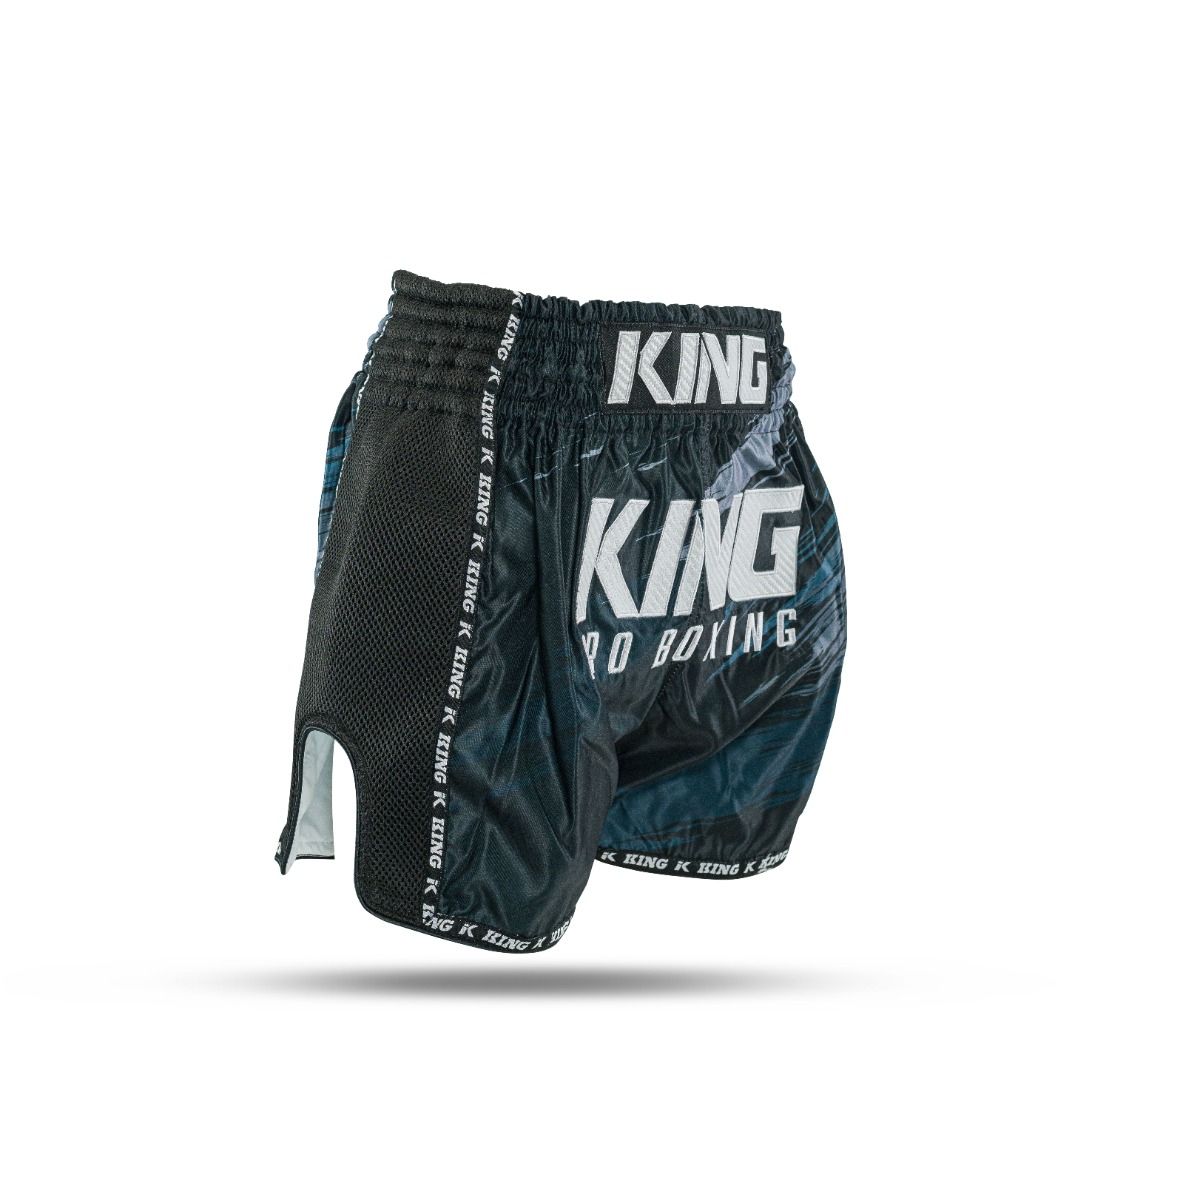 King Pro Boxing - Storm 1 - short - korte broek - zwart - grijs - blauw - grey - black - blue   